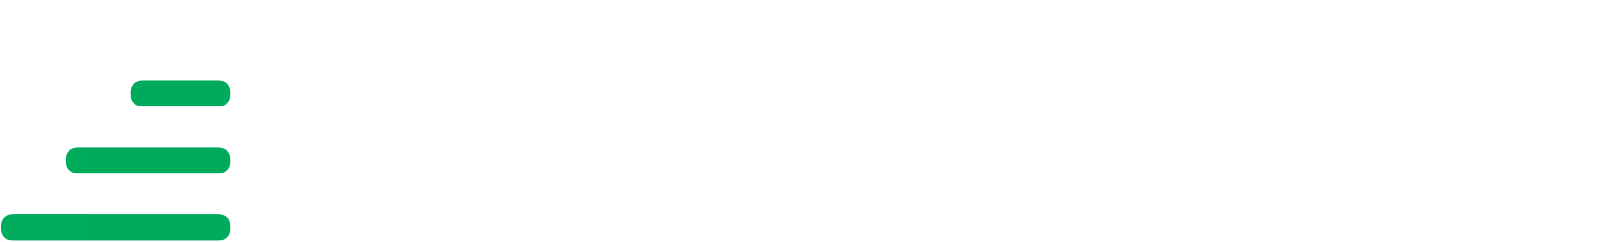 Transurban Logo groß für dunkle Hintergründe (transparentes PNG)